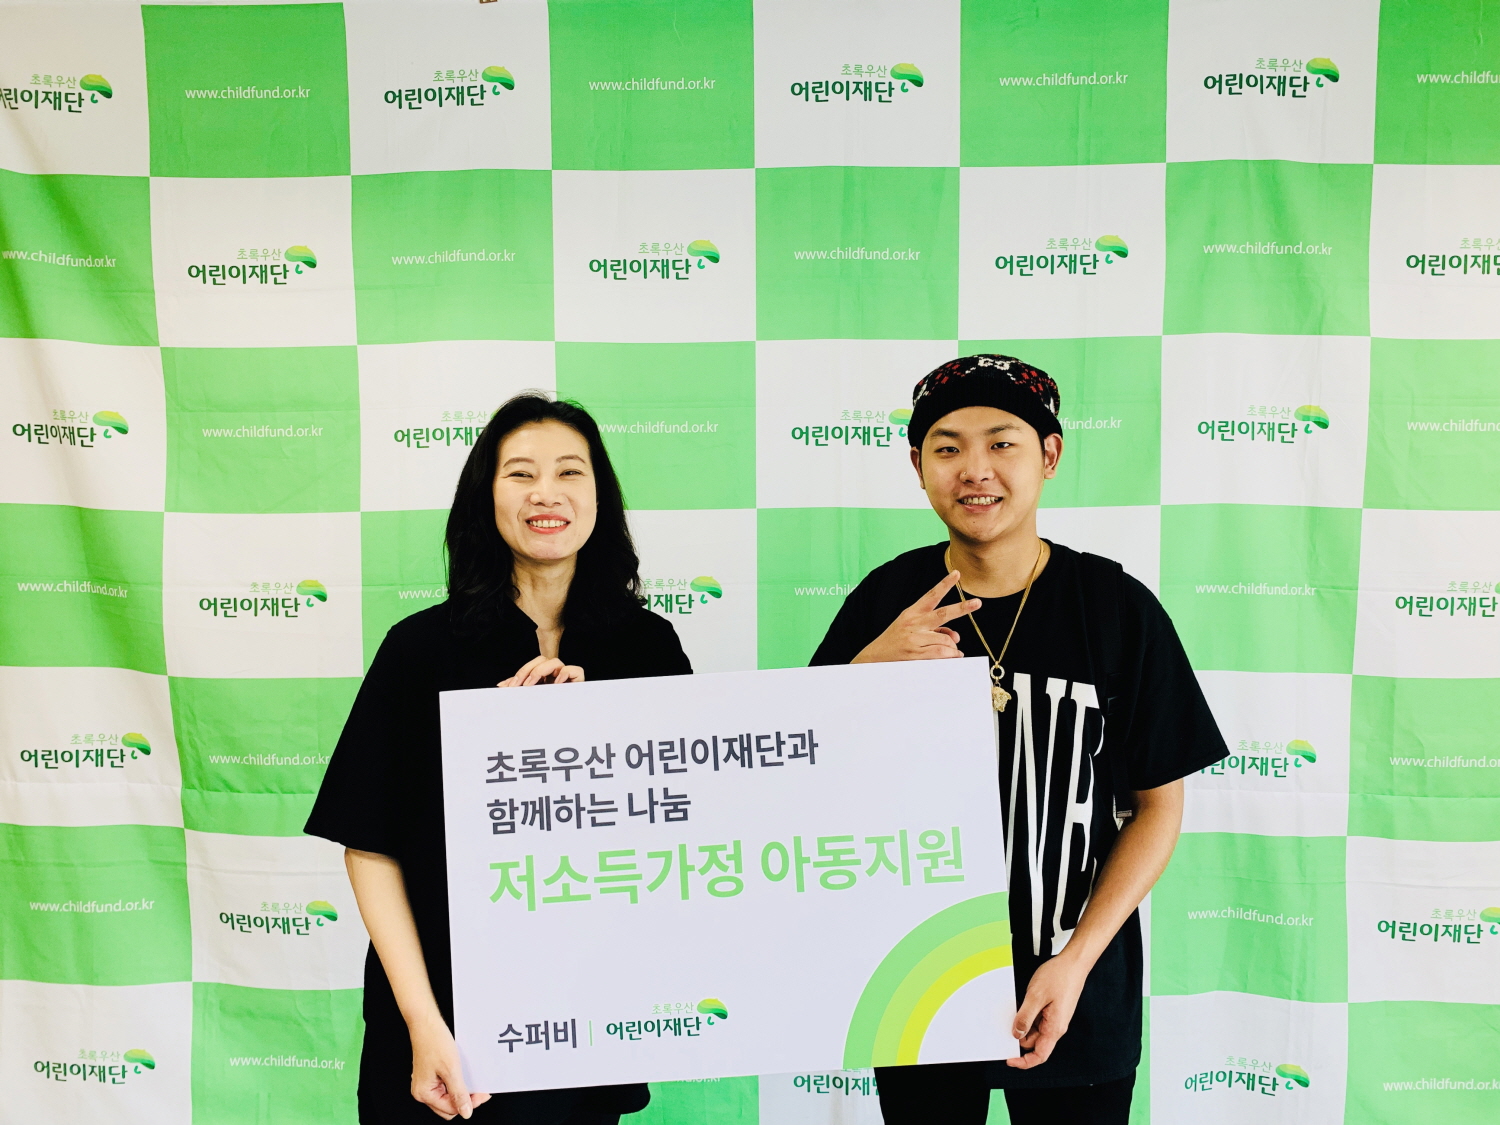 래퍼 수퍼비, 단독 콘서트 수익금 전액 '어린이 재단'에 기부